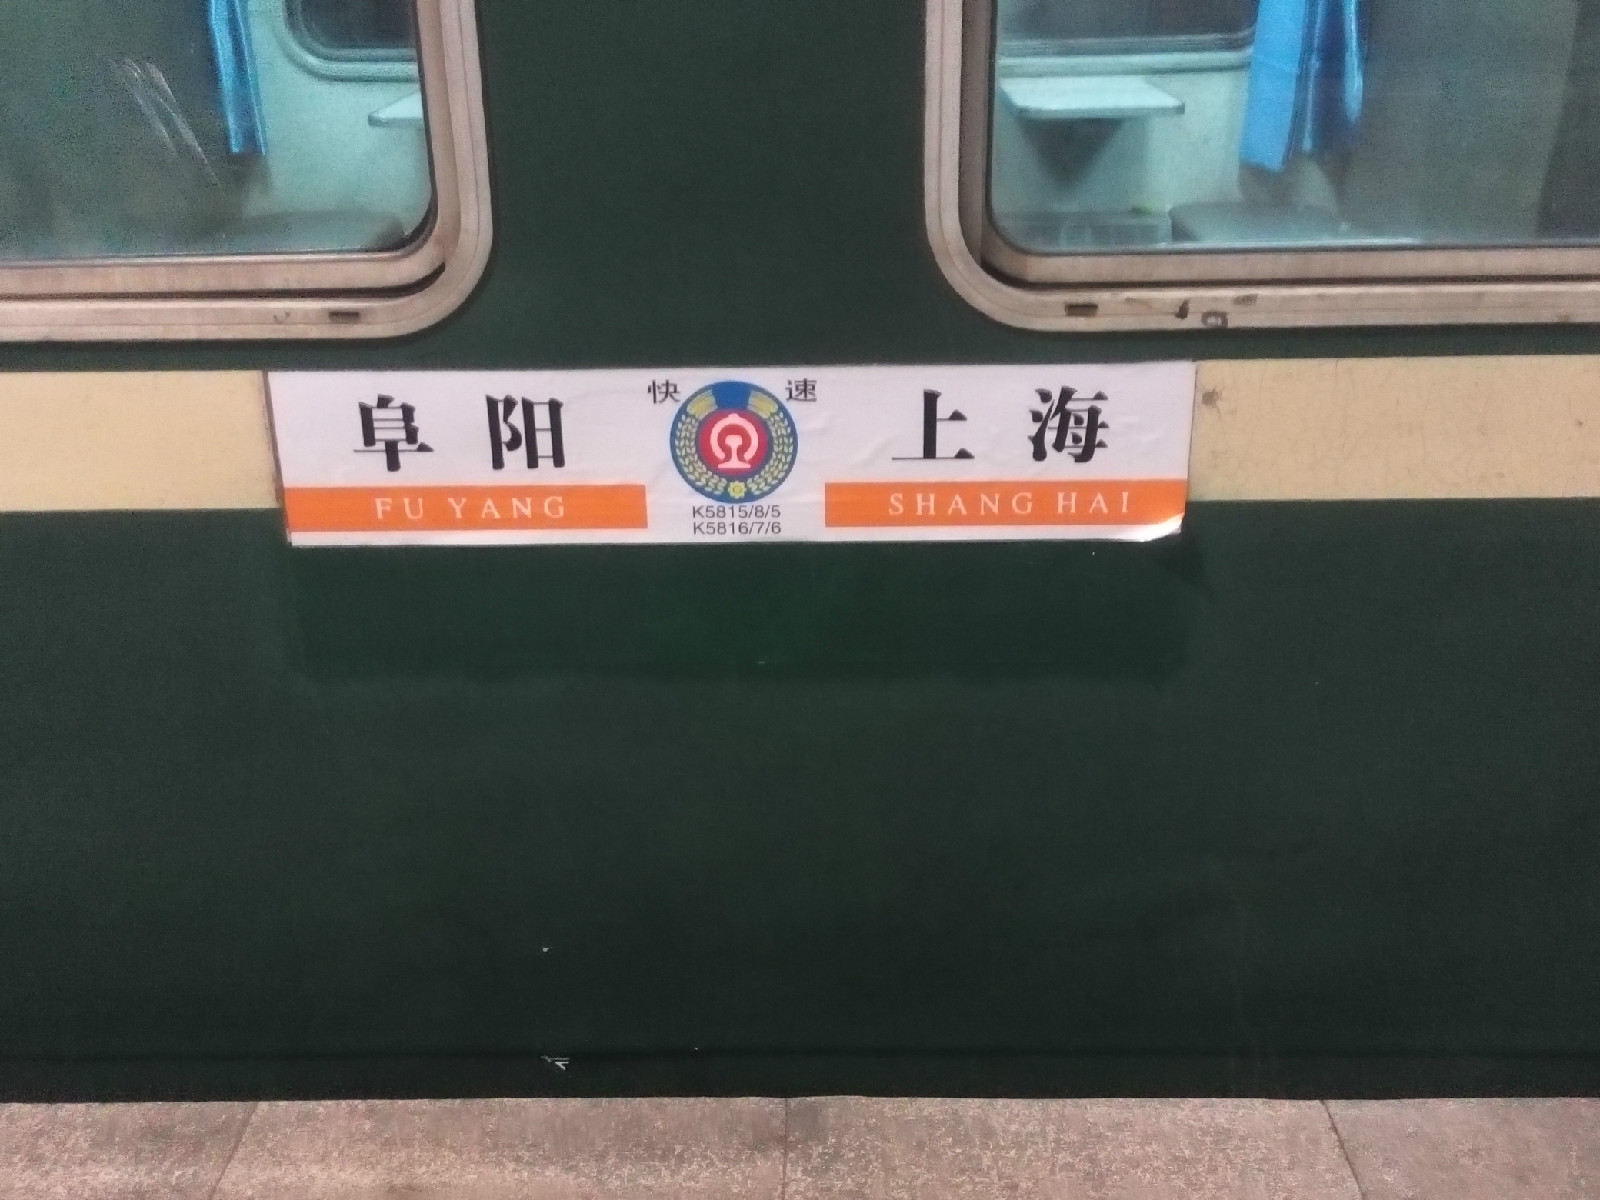 臨時旅客列車(臨客列車)